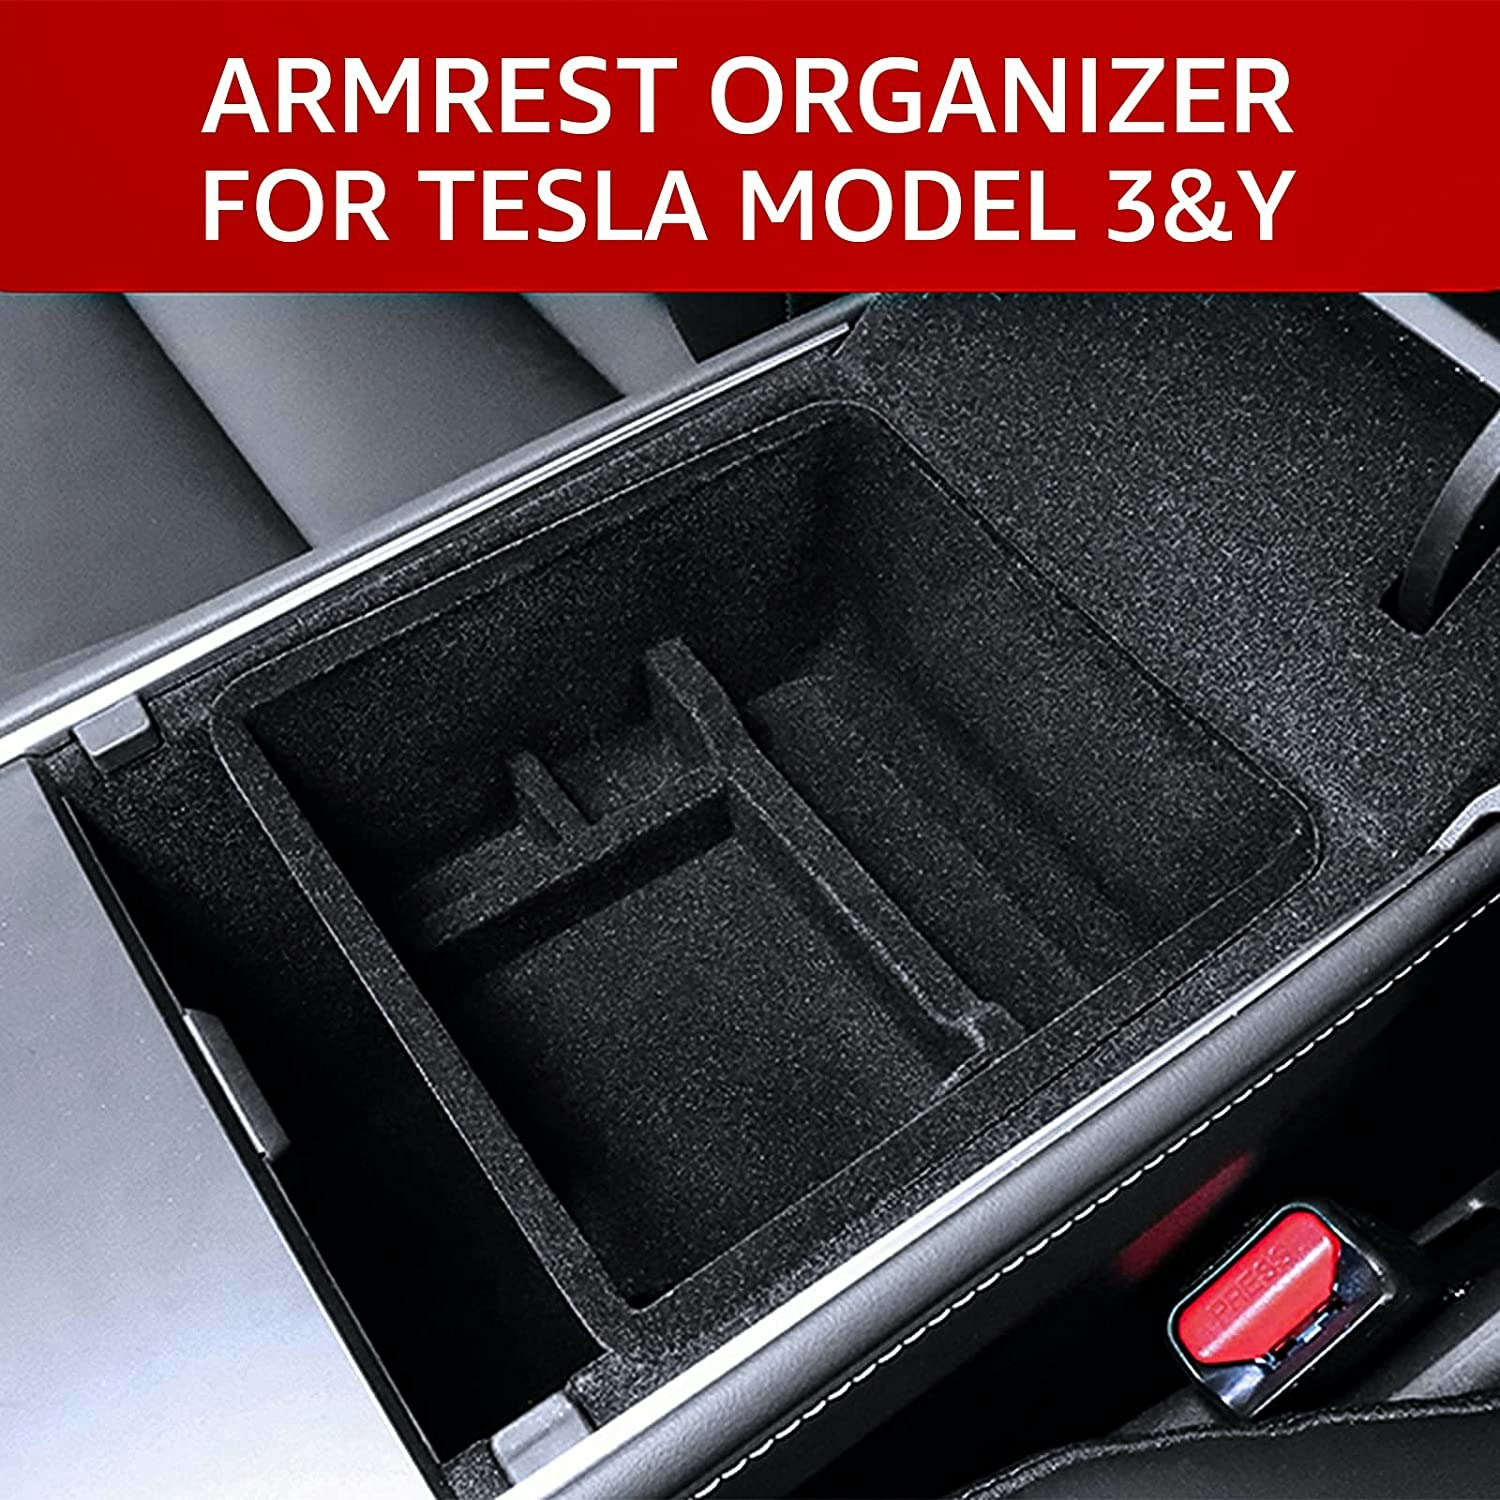 Insats i silikon till mittkonsolen, svart - Tesla Model 3 2021/Y